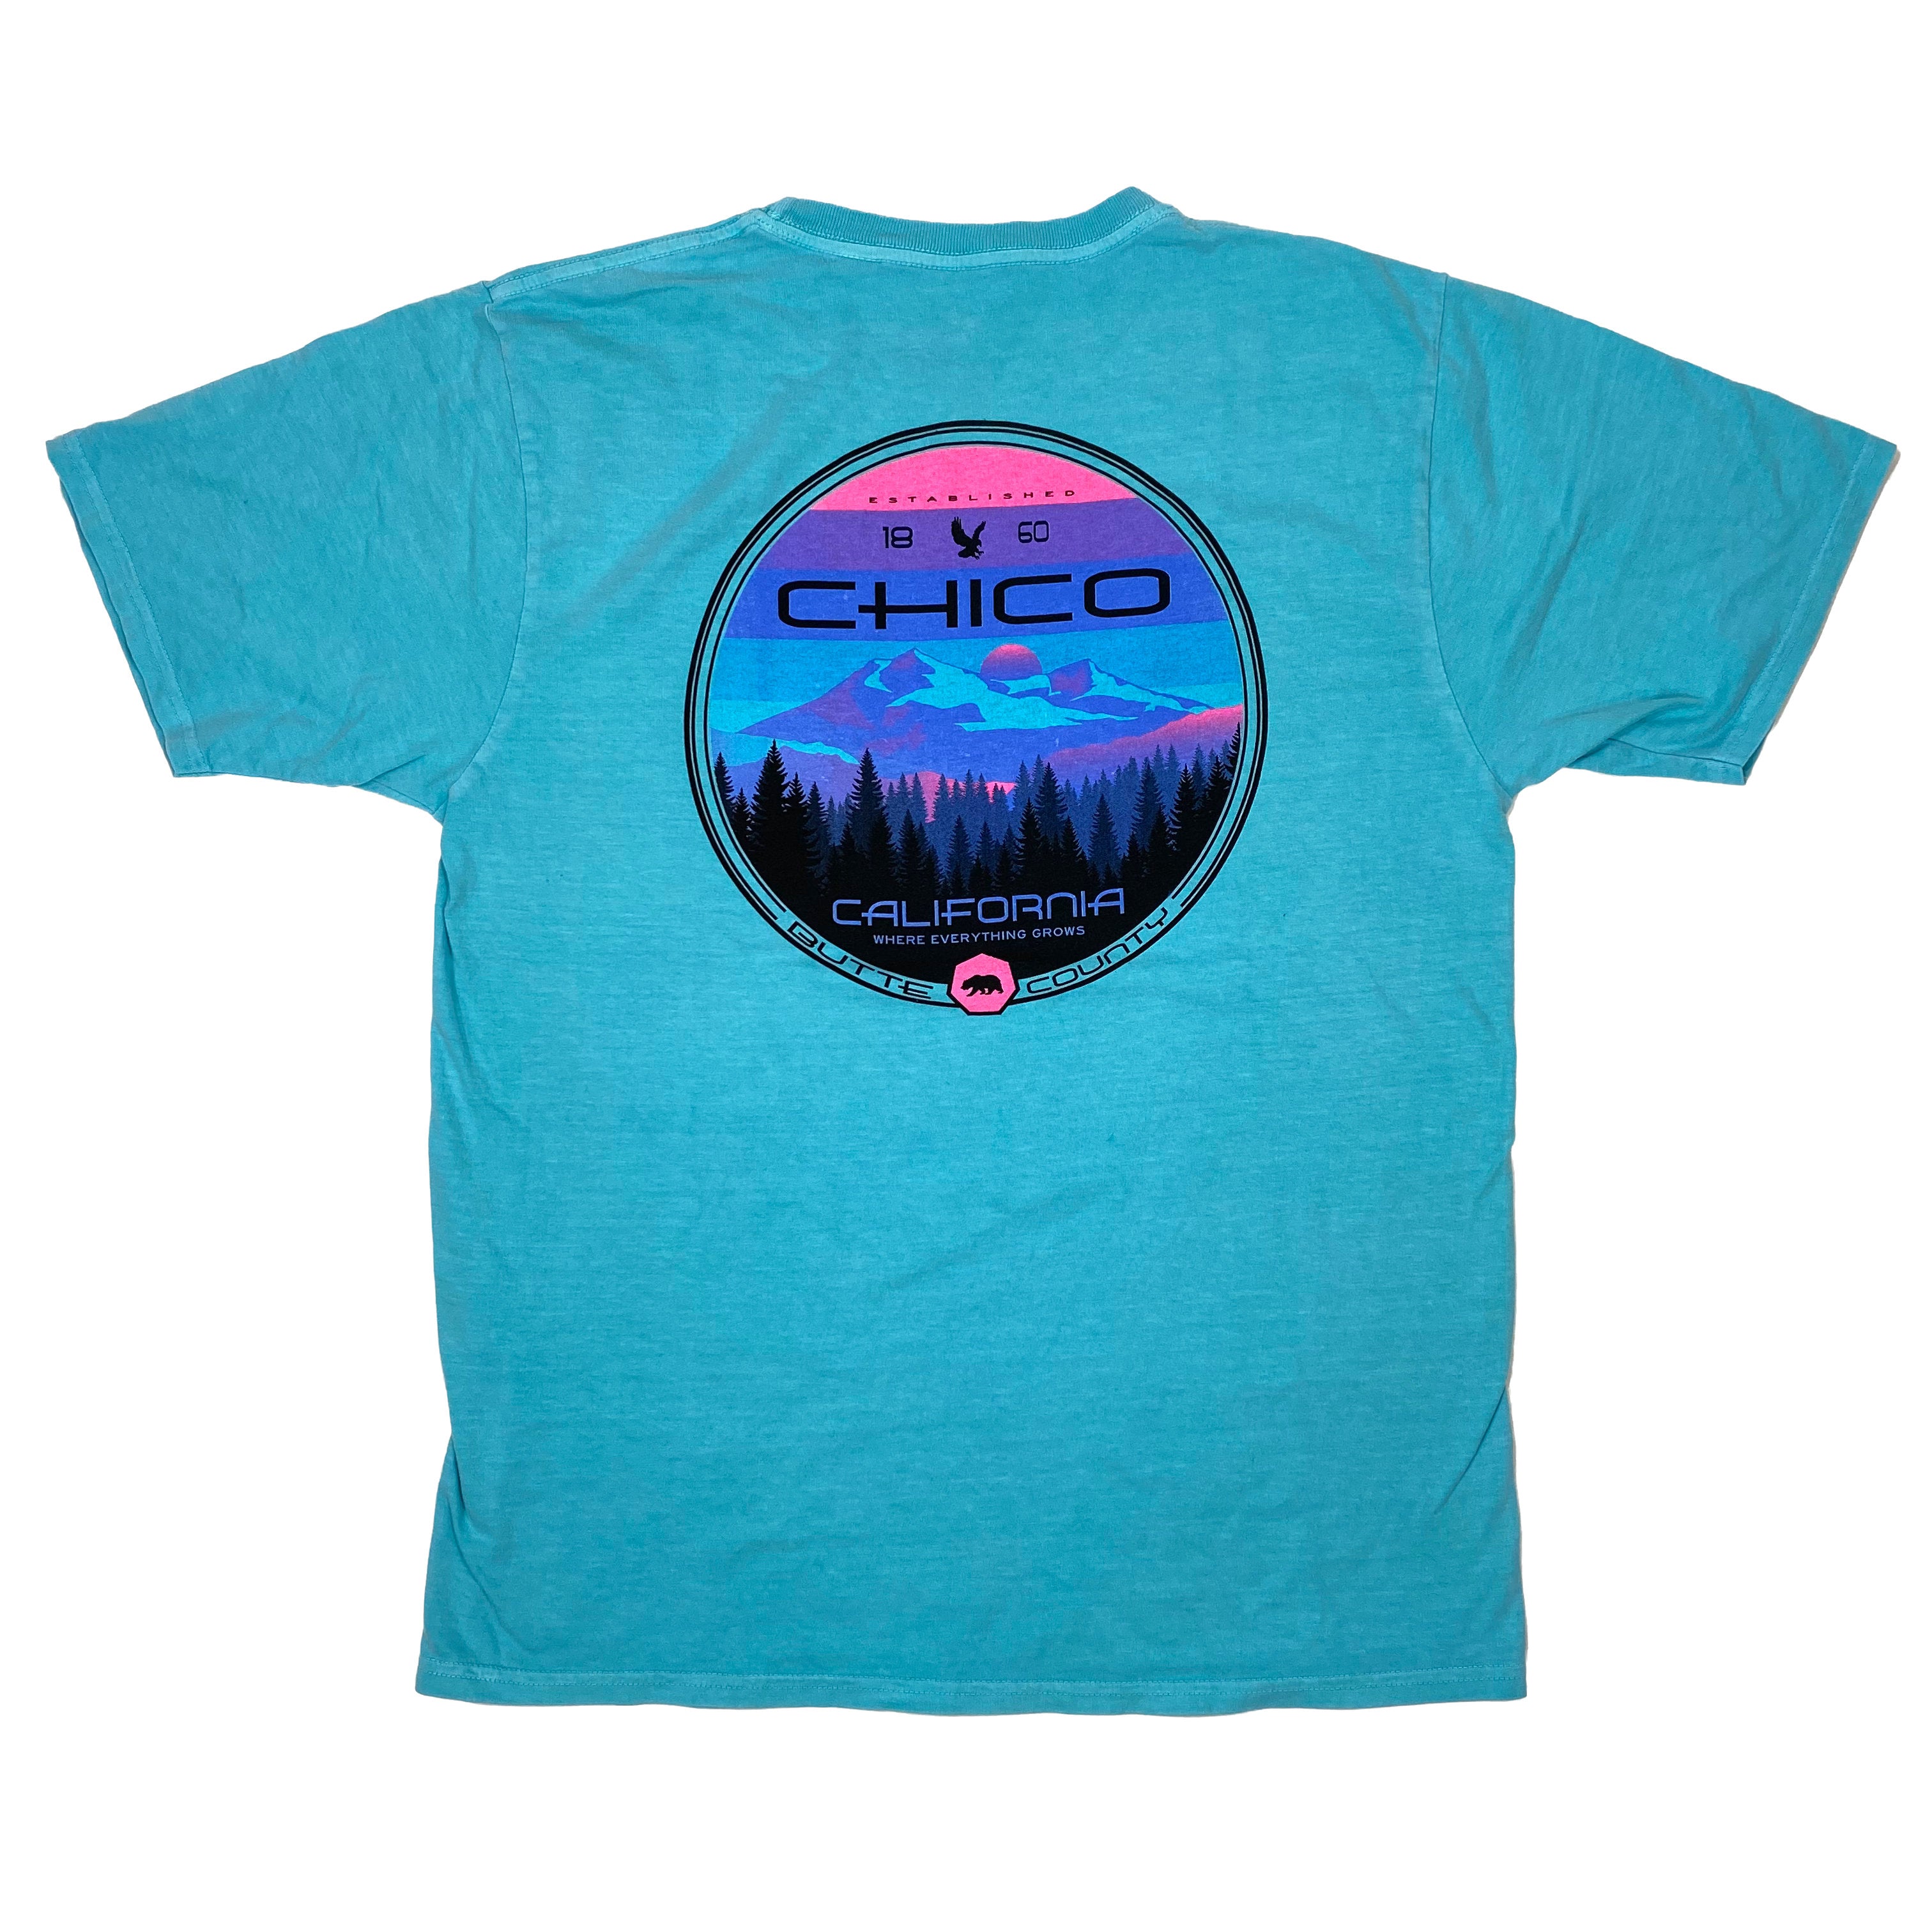 Disunion Mountain - Chico T-Shirt Carribbean Blue S  BM8RROTR.1